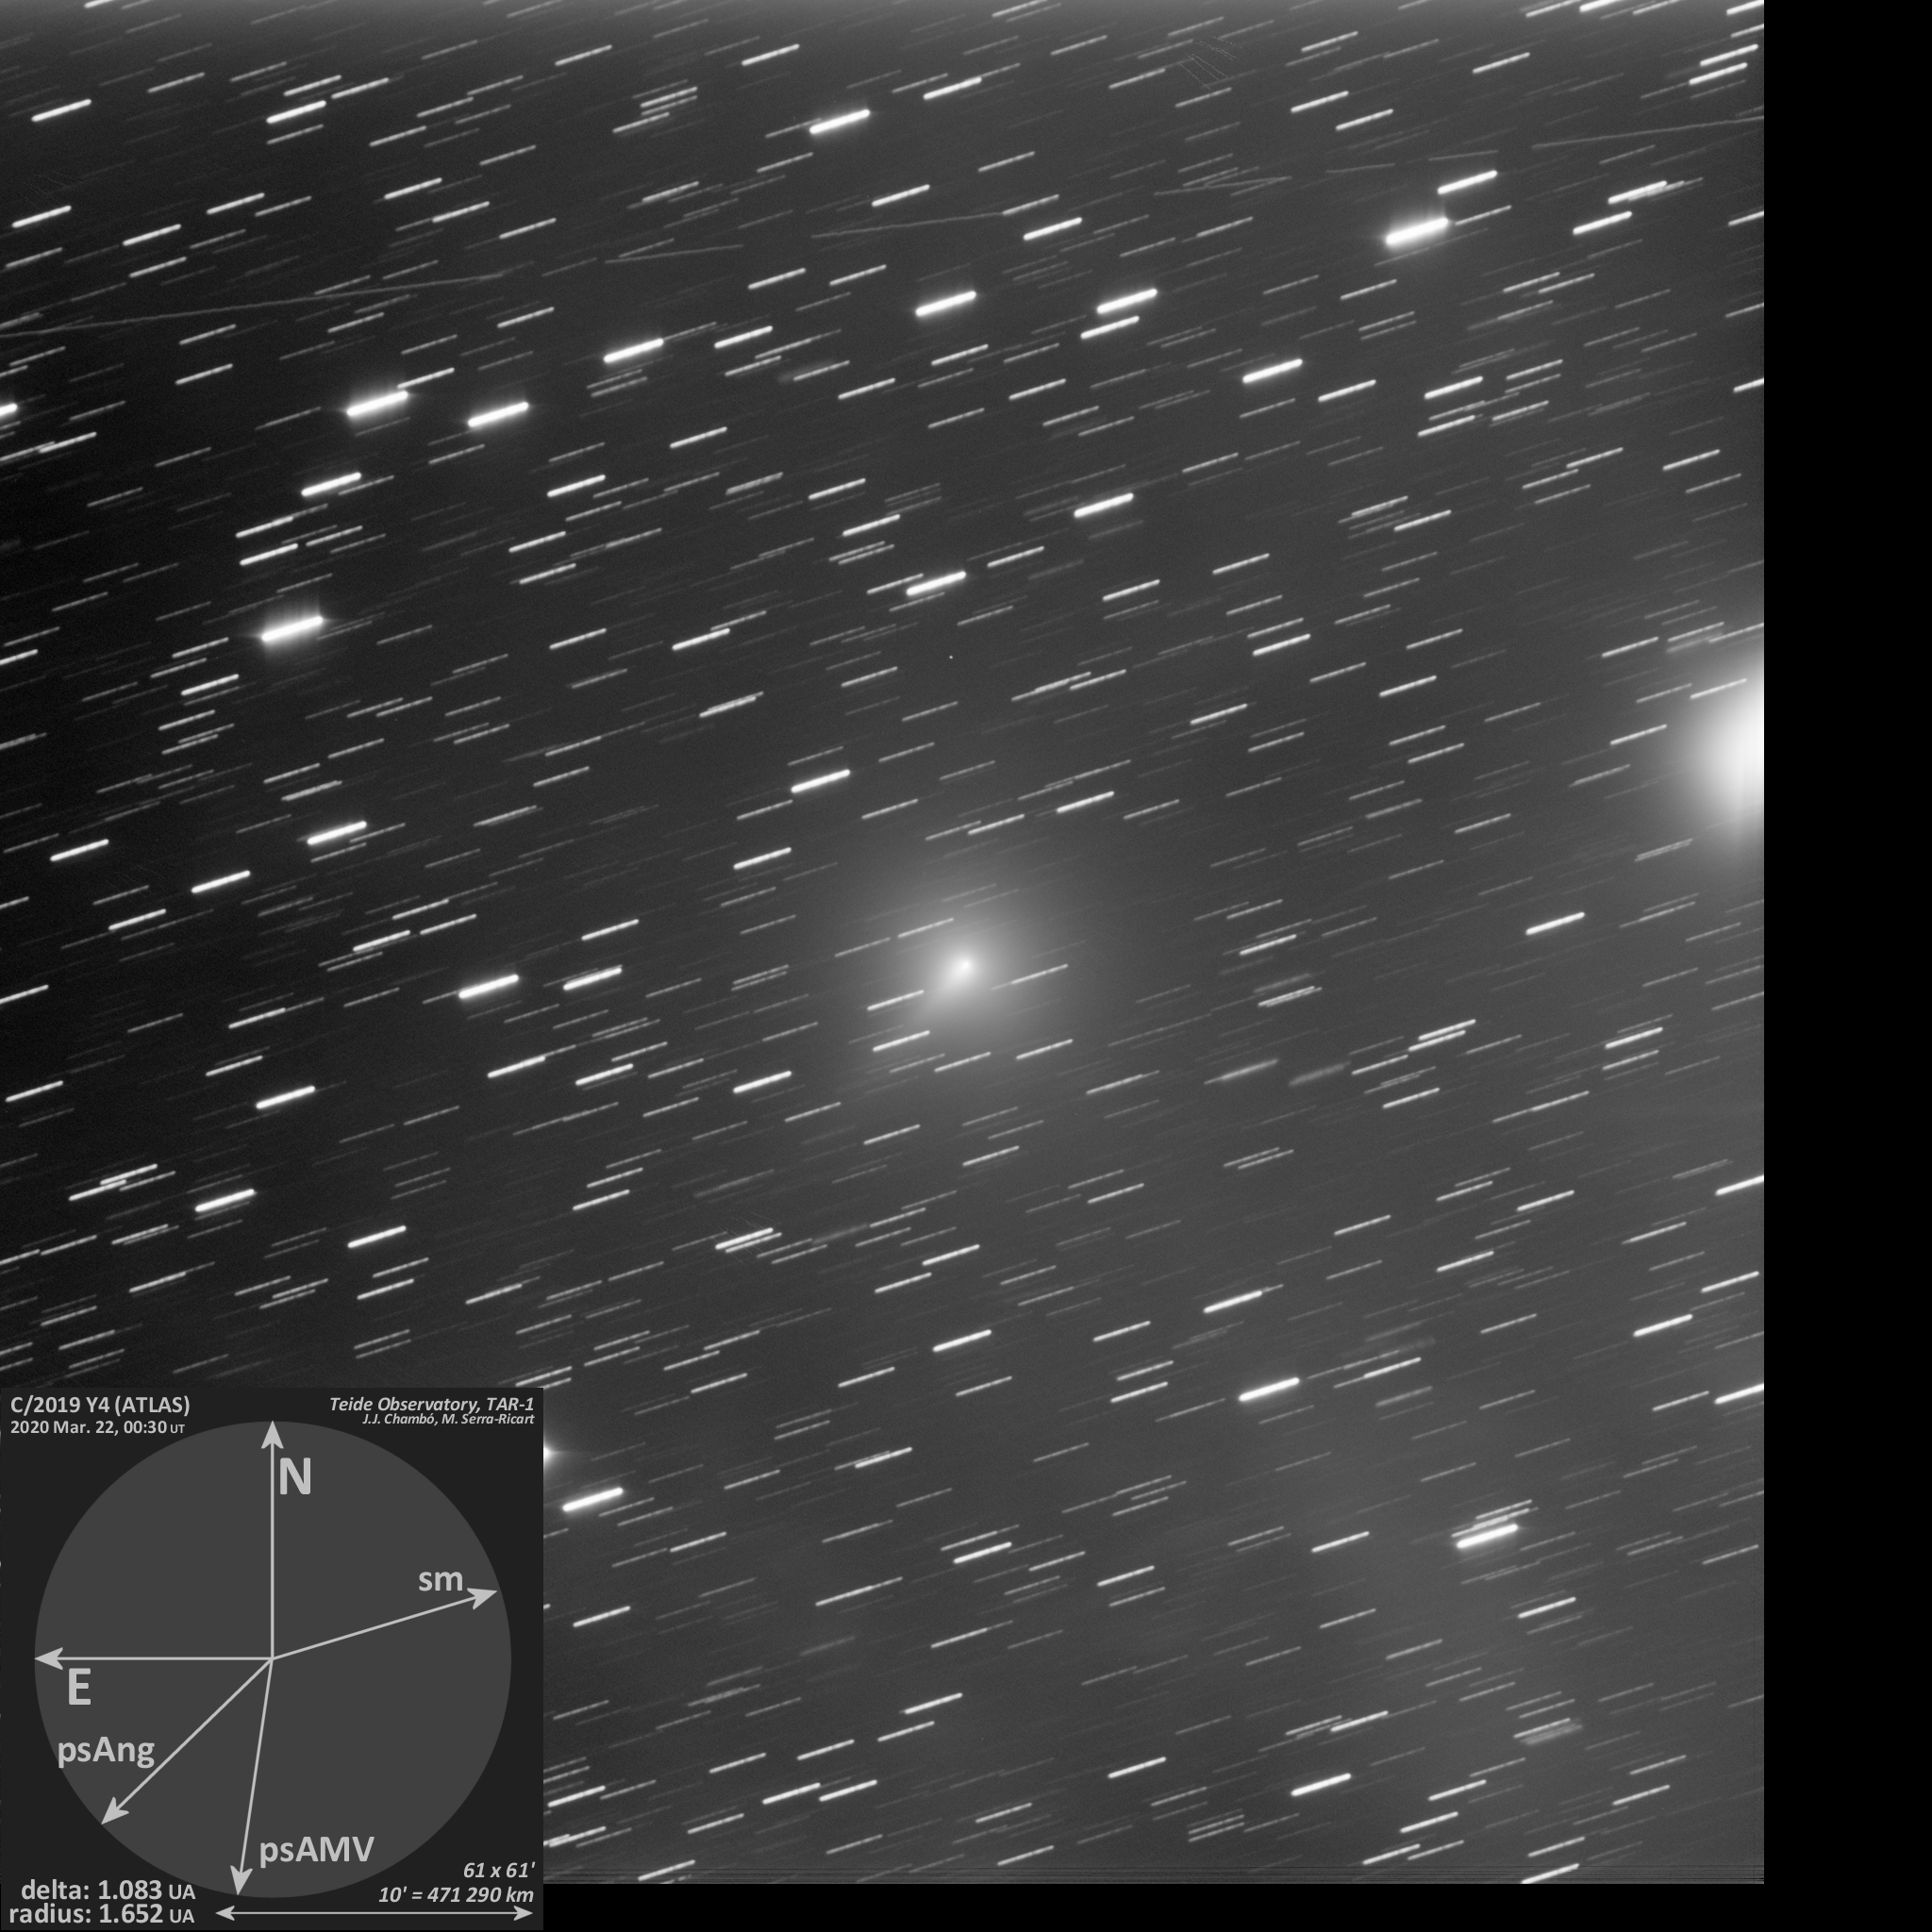  Imagen del cometa C/2019 Y4 (ATLAS) obtenida el 22 de Marzo de 2020 por el Telescopio TAR1 (Miquel Serra-Ricart, José J. Chambó, Observatorio del Teide, IAC).